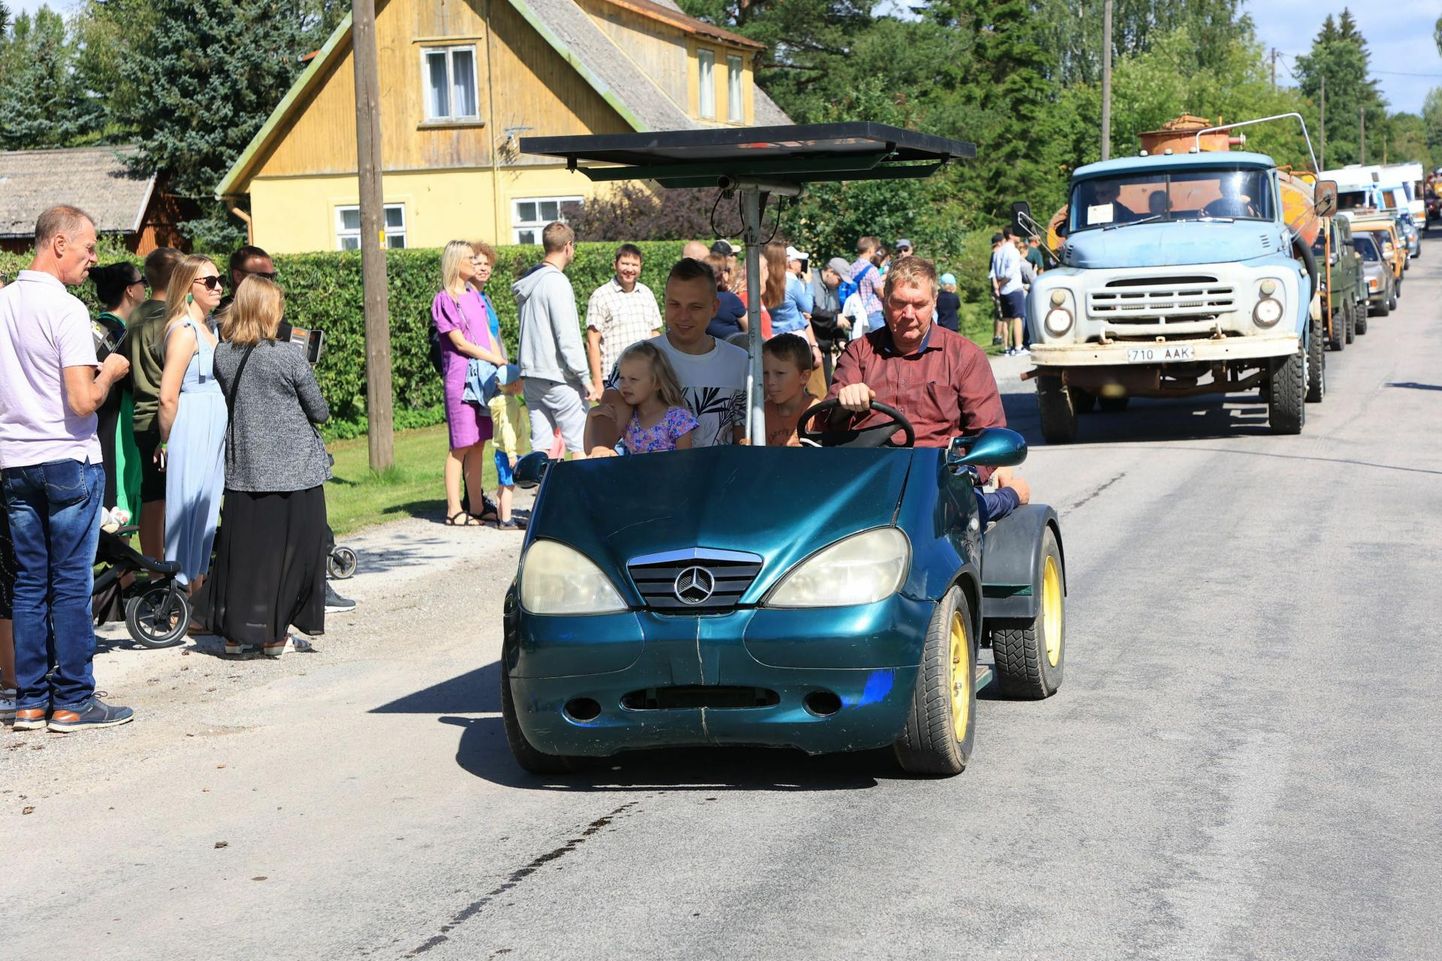 Viljandimaa mees Ain Vätsing (roolis) tõi oma insenertehnilise loomingu Järva-Jaani killavoorile välja kolmandat korda.